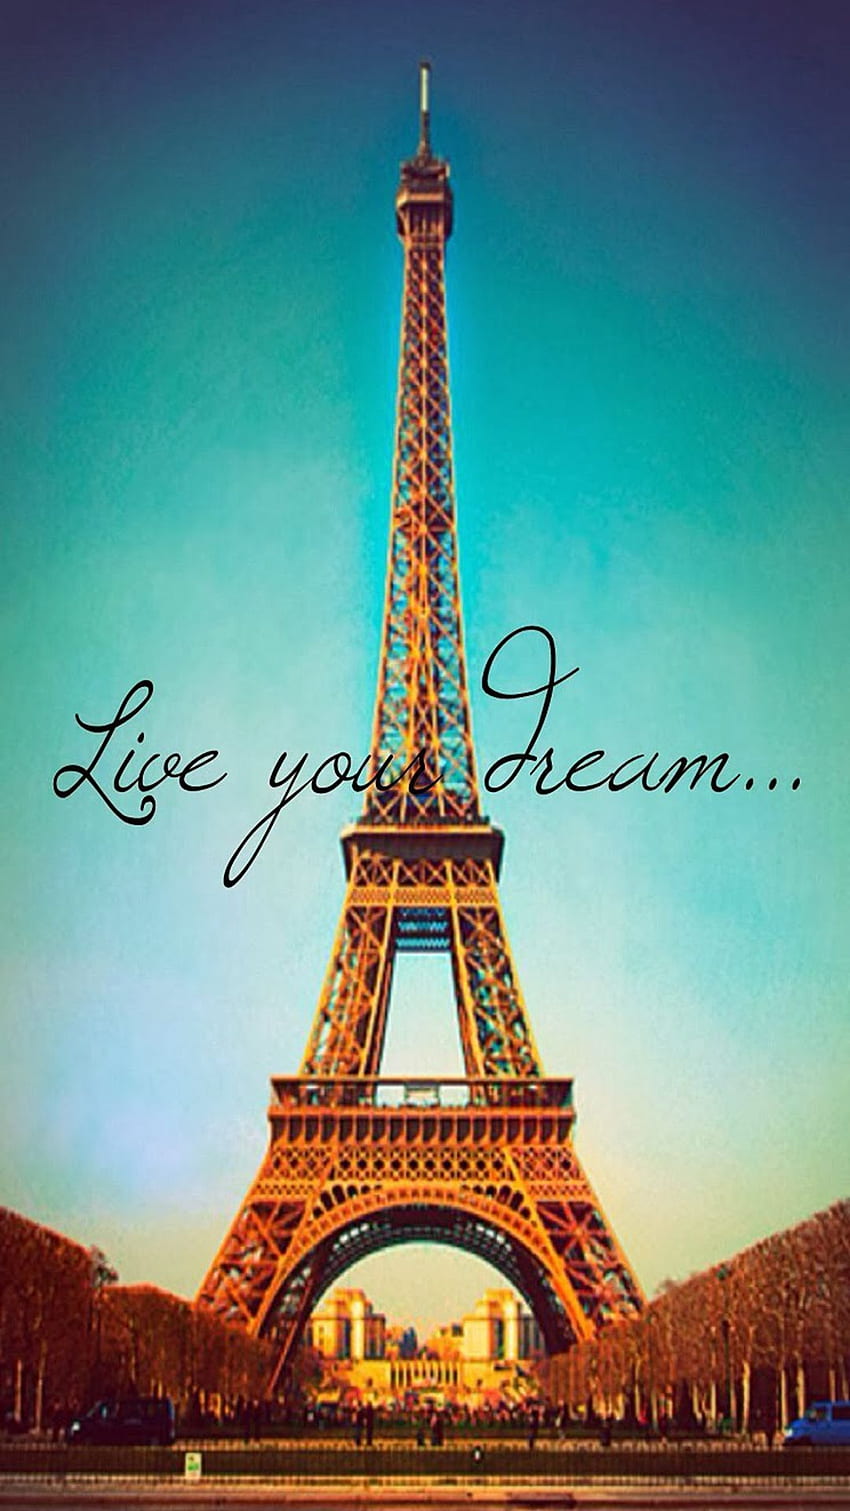 Live Your Dream Paris エッフェル塔 iPhone 6 . iPhone、iPadワンストップで。 パリ , エッフェル塔, パリエッフェル塔 HD電話の壁紙